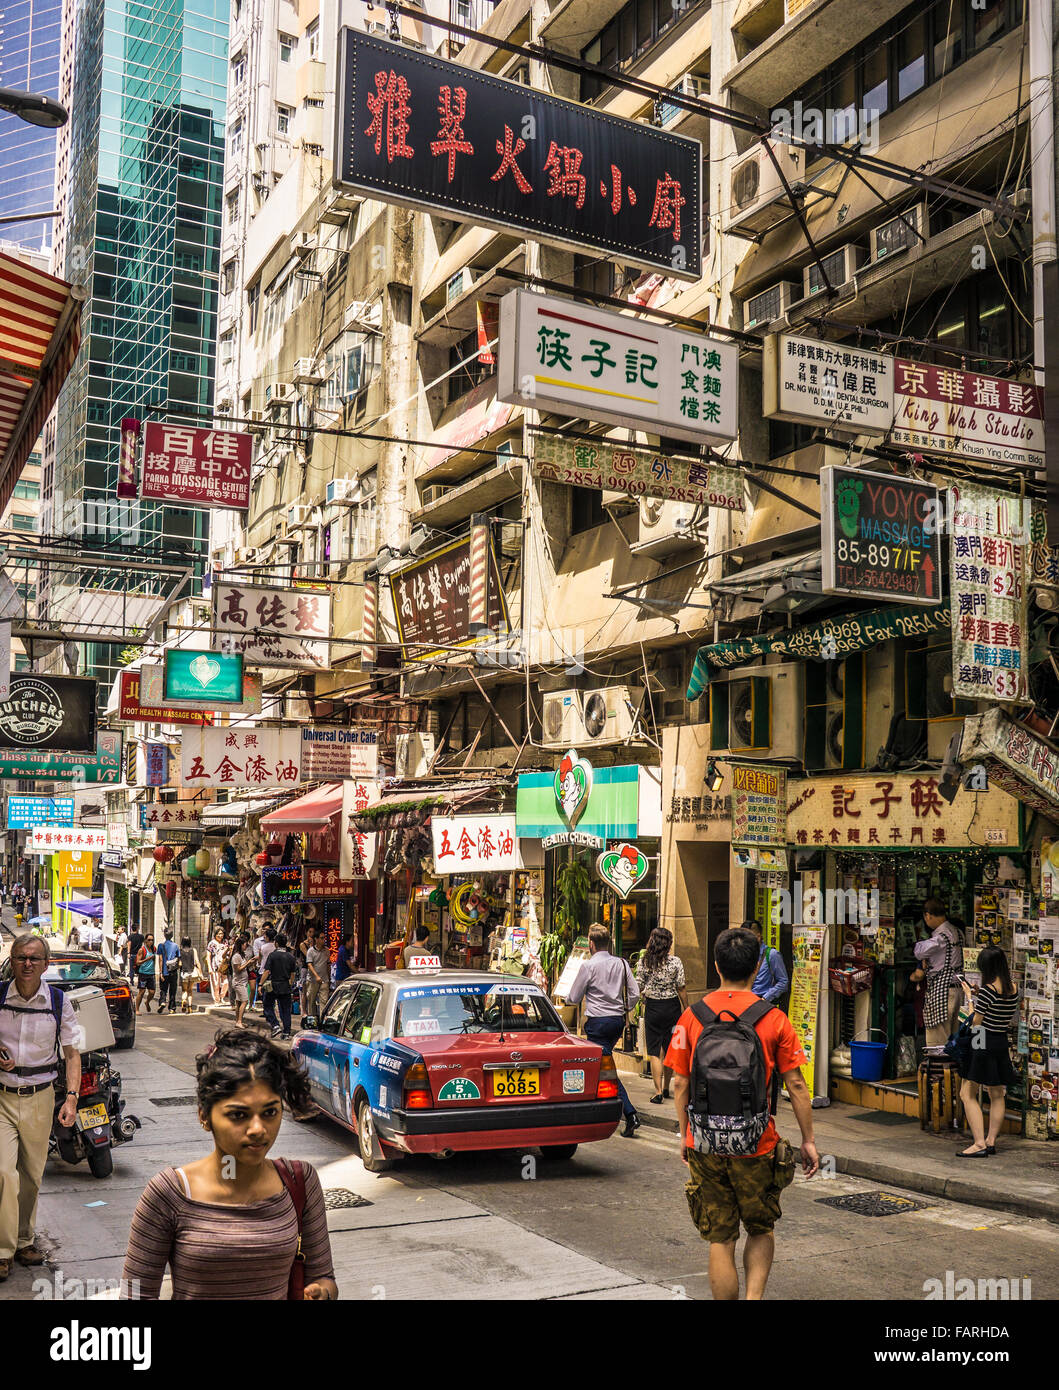 Una concurrida calle escena de Hong Kong Foto de stock